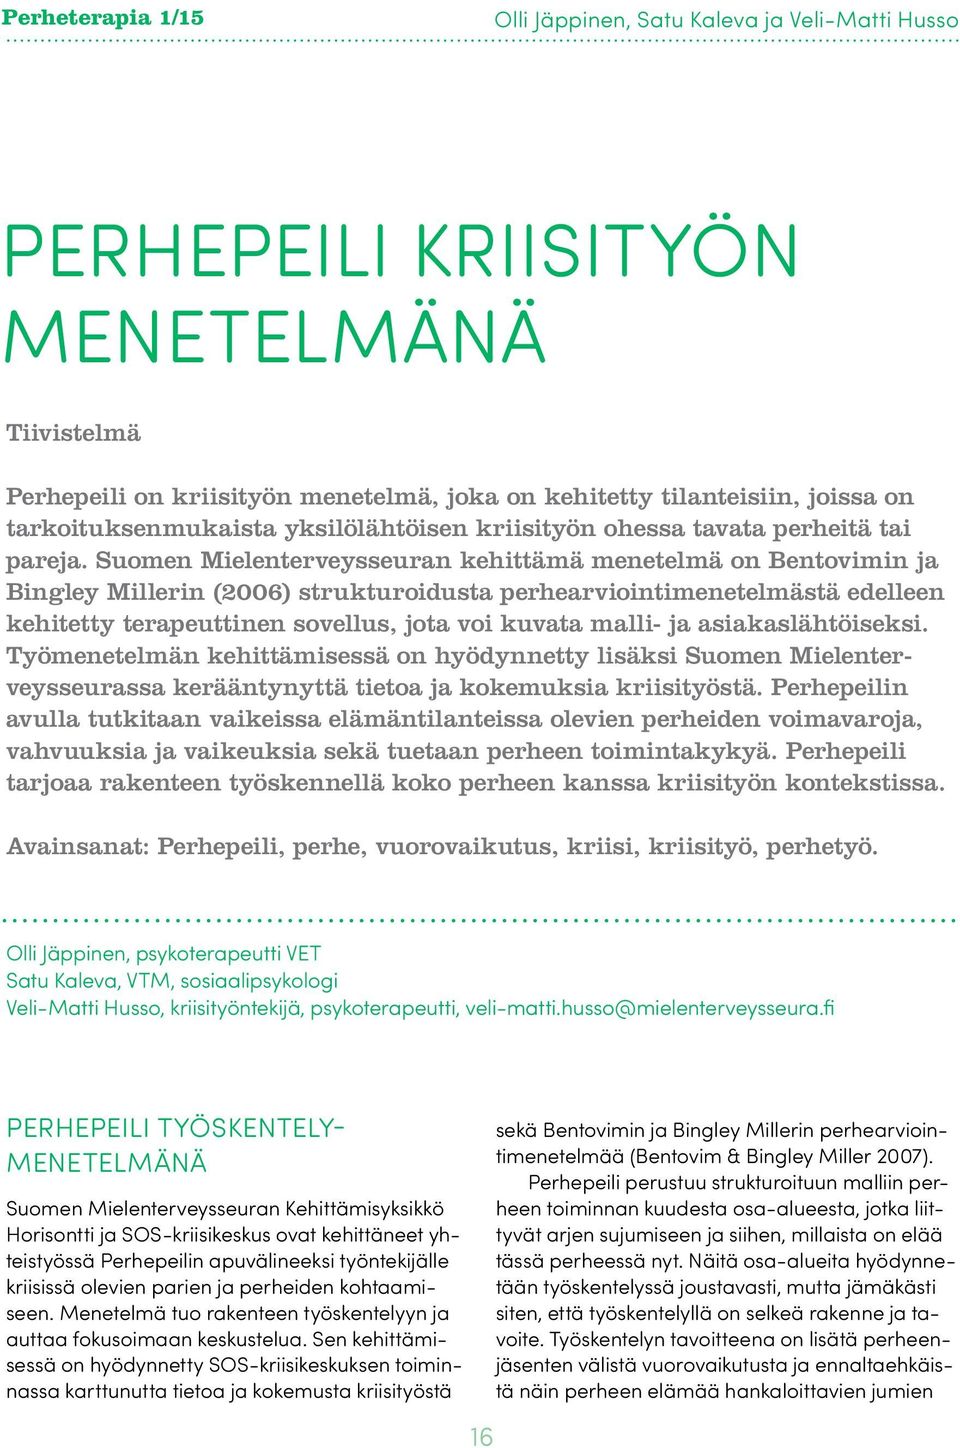 Suomen Mielenterveysseuran kehittämä menetelmä on Bentovimin ja Bingley Millerin (2006) strukturoidusta perhearviointimenetelmästä edelleen kehitetty terapeuttinen sovellus, jota voi kuvata malli- ja